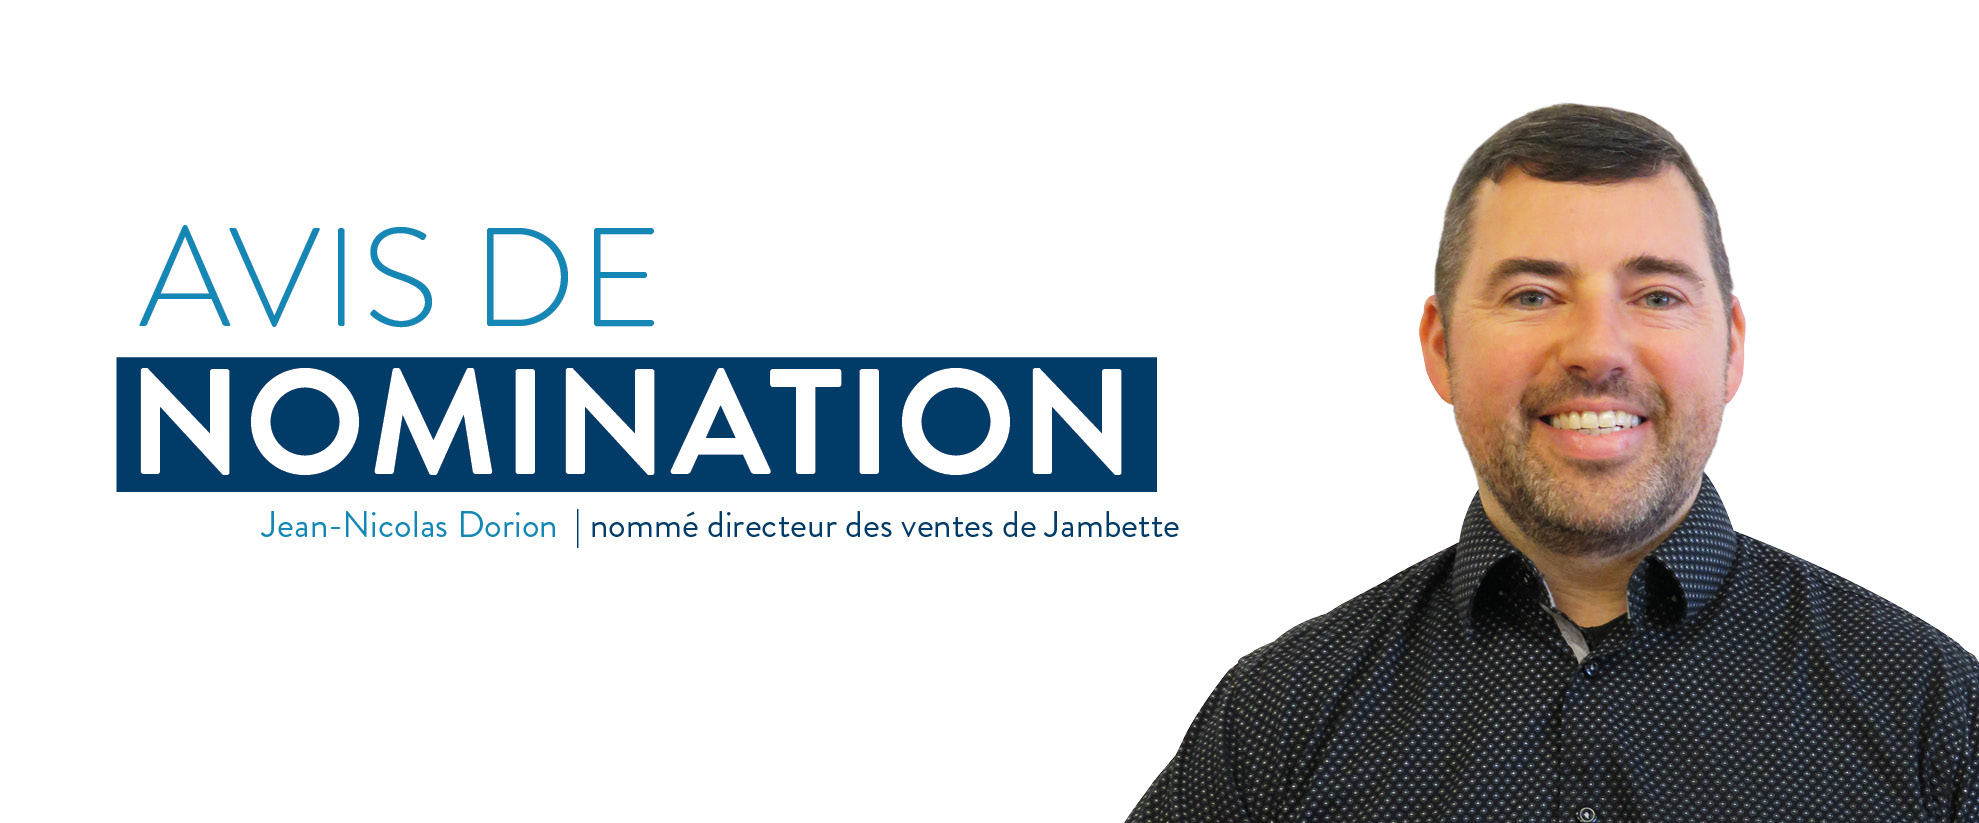 Avis de nomination de Jean-Nicolas Dorion au poste de Directeur des ventes chez Jambette